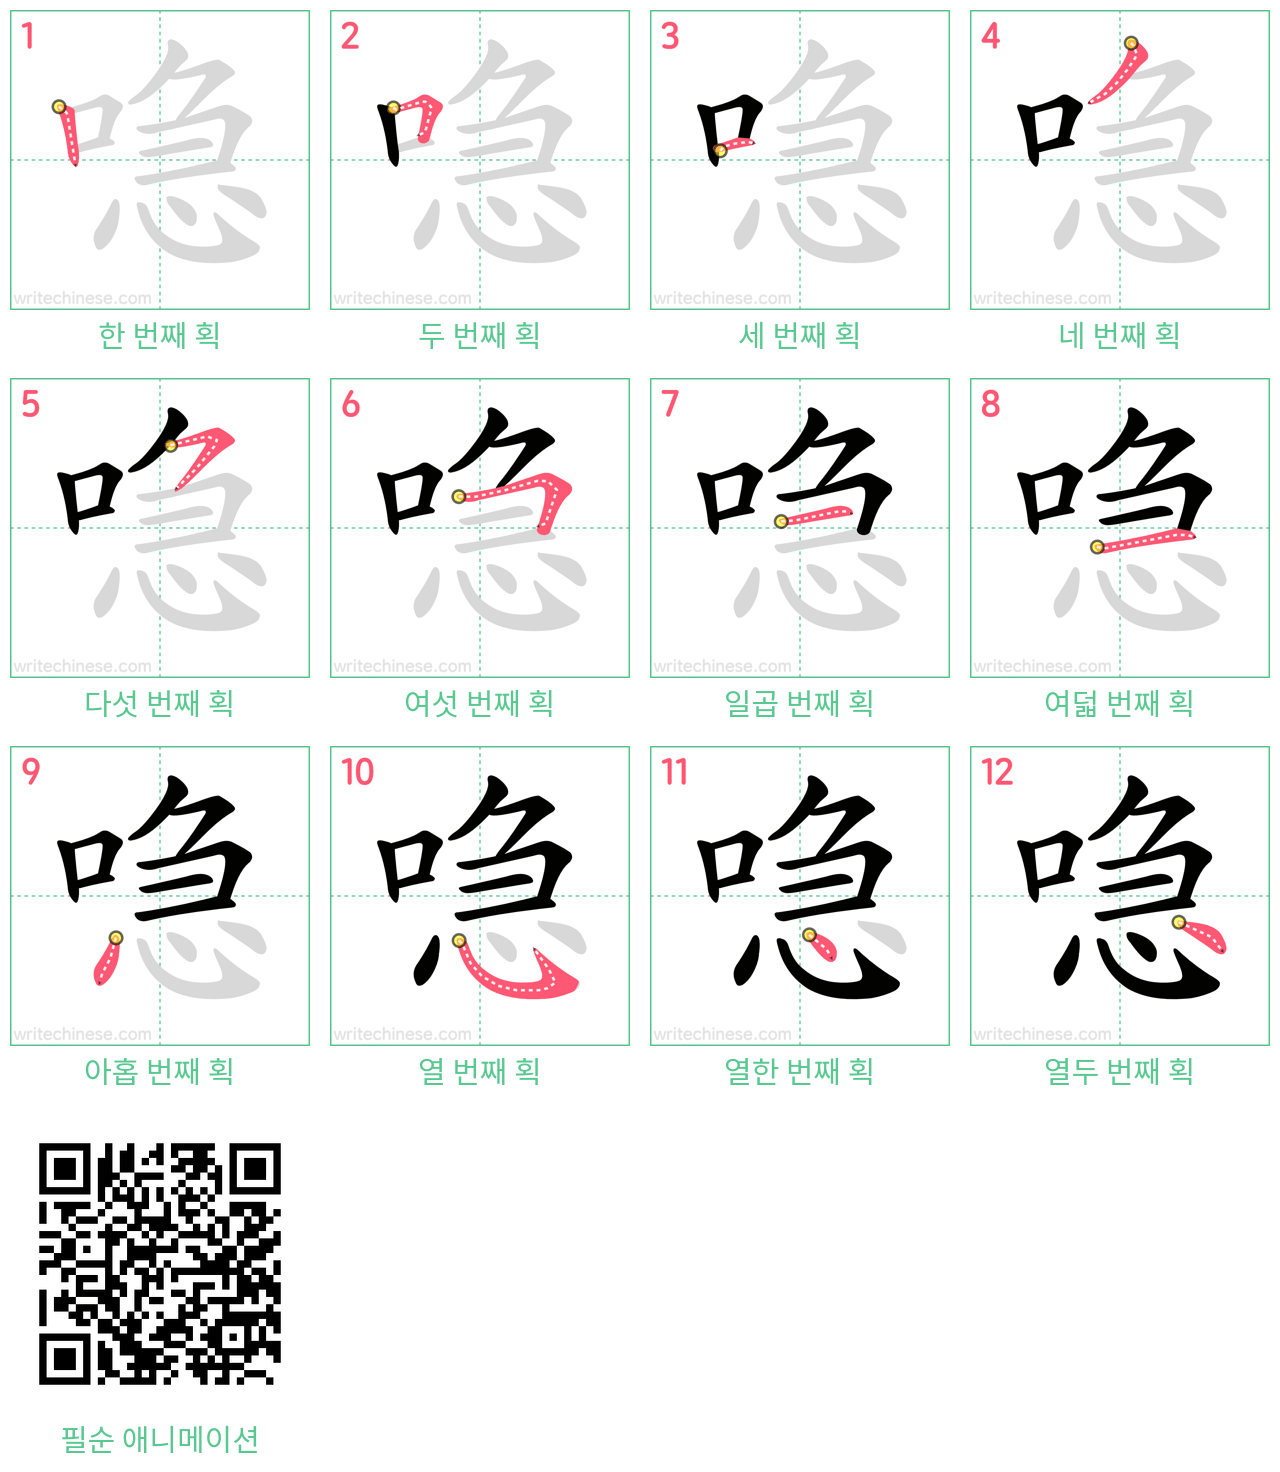 喼 step-by-step stroke order diagrams